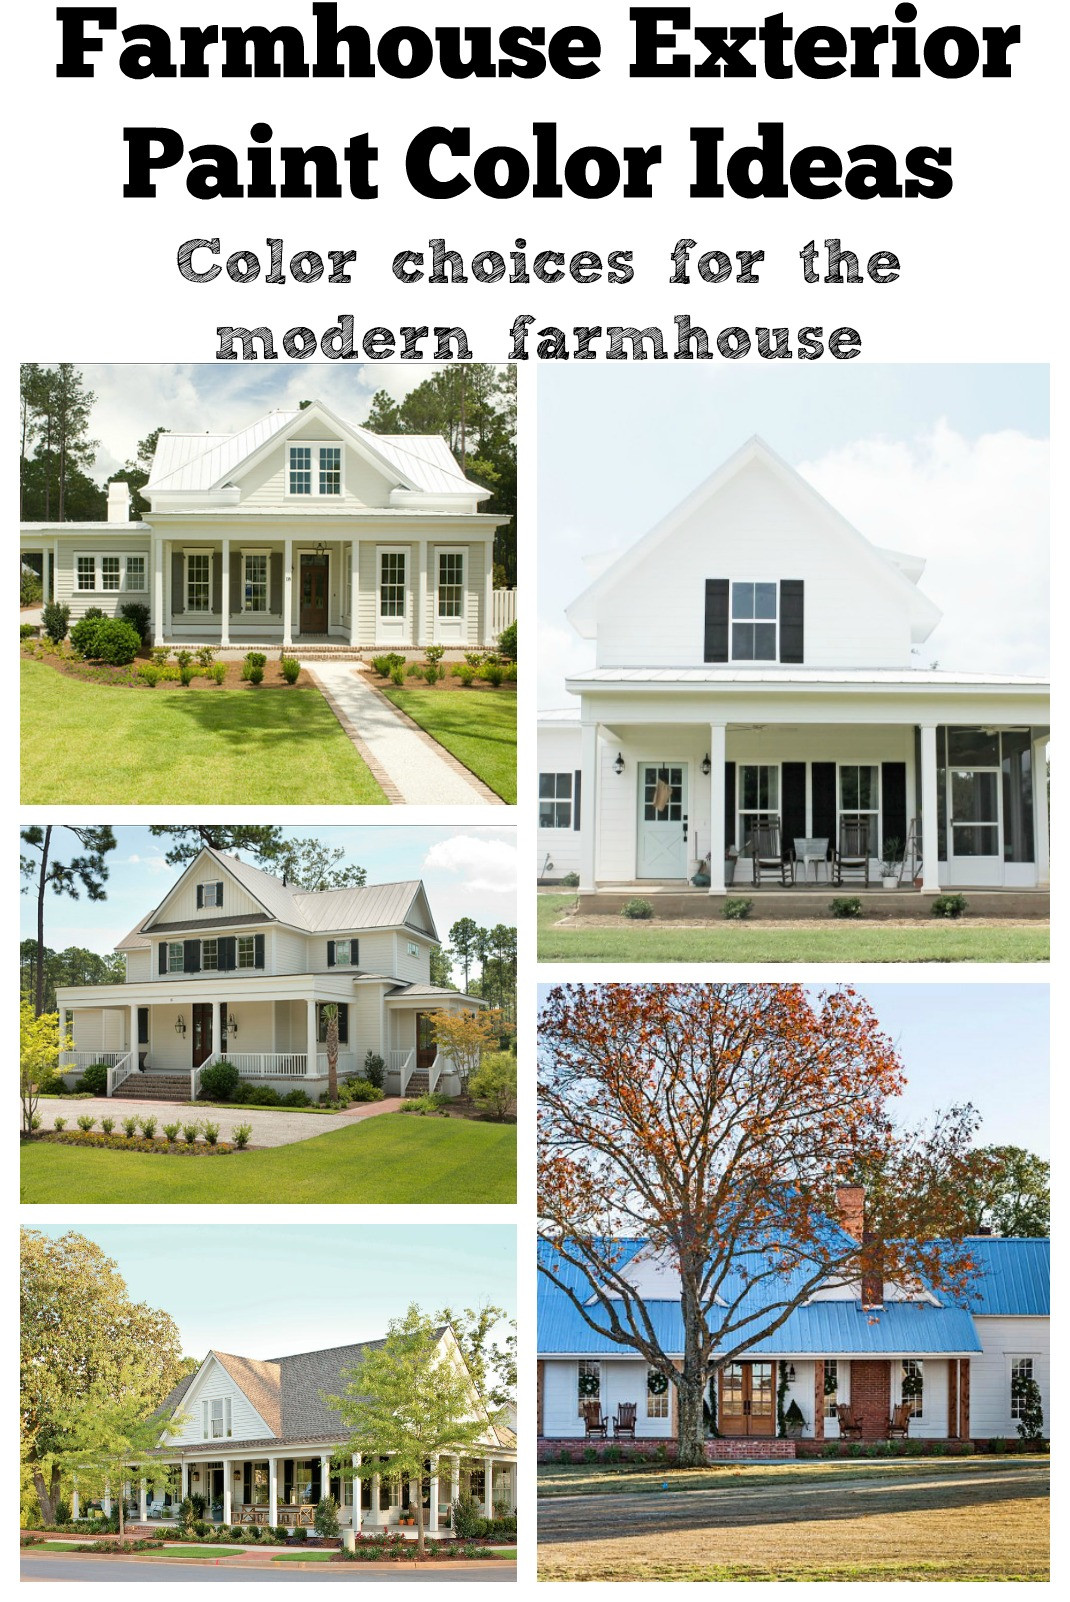 Best ideas about Farmhouse Paint Colors
. Save or Pin Farmhouse Exterior Paint Color Ideas Now.